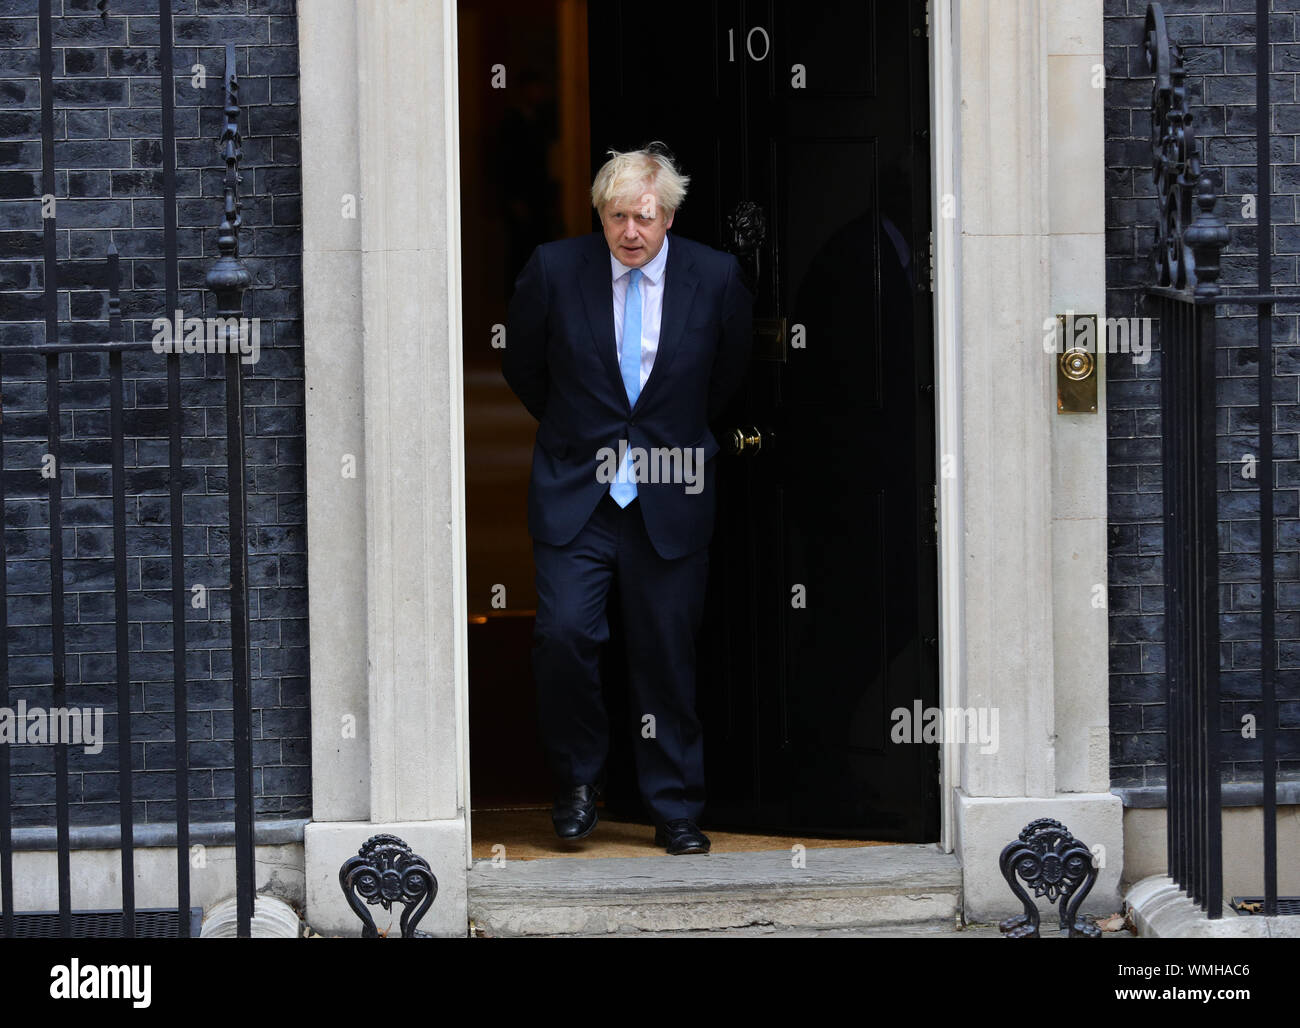 Premier ministre Boris Johnson attend d'accueillir le Premier ministre israélien Benjamin Netanyahu à l'extérieur de 10 Downing Street, Londres. Banque D'Images